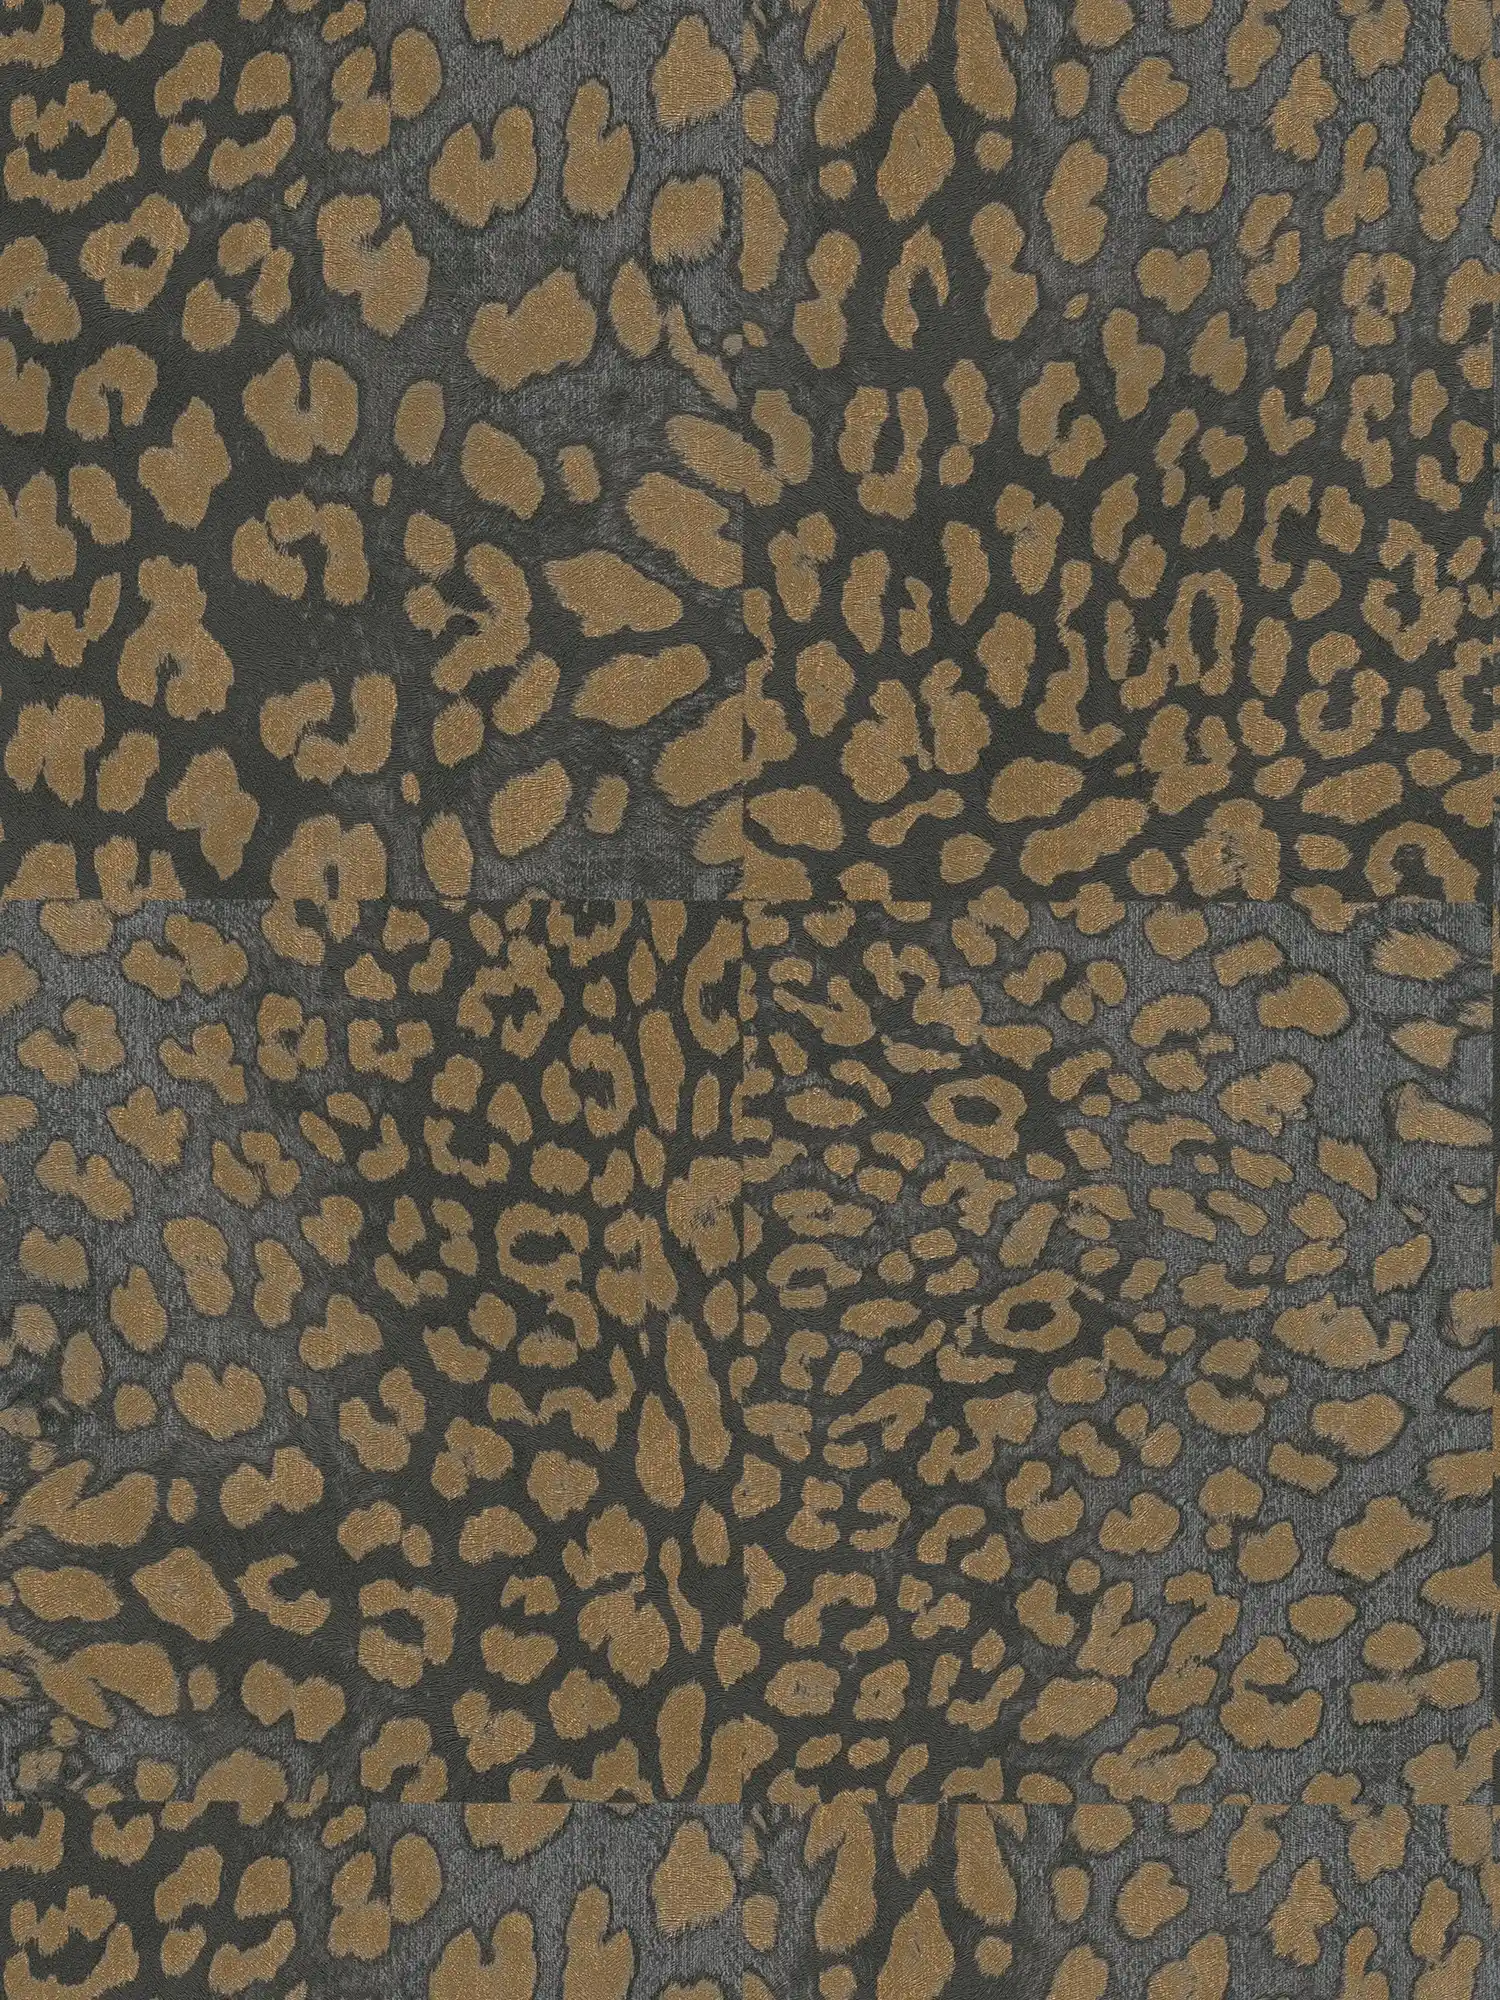 Animal Print Tapete mit Metallic-Muster – Grau, Gold
